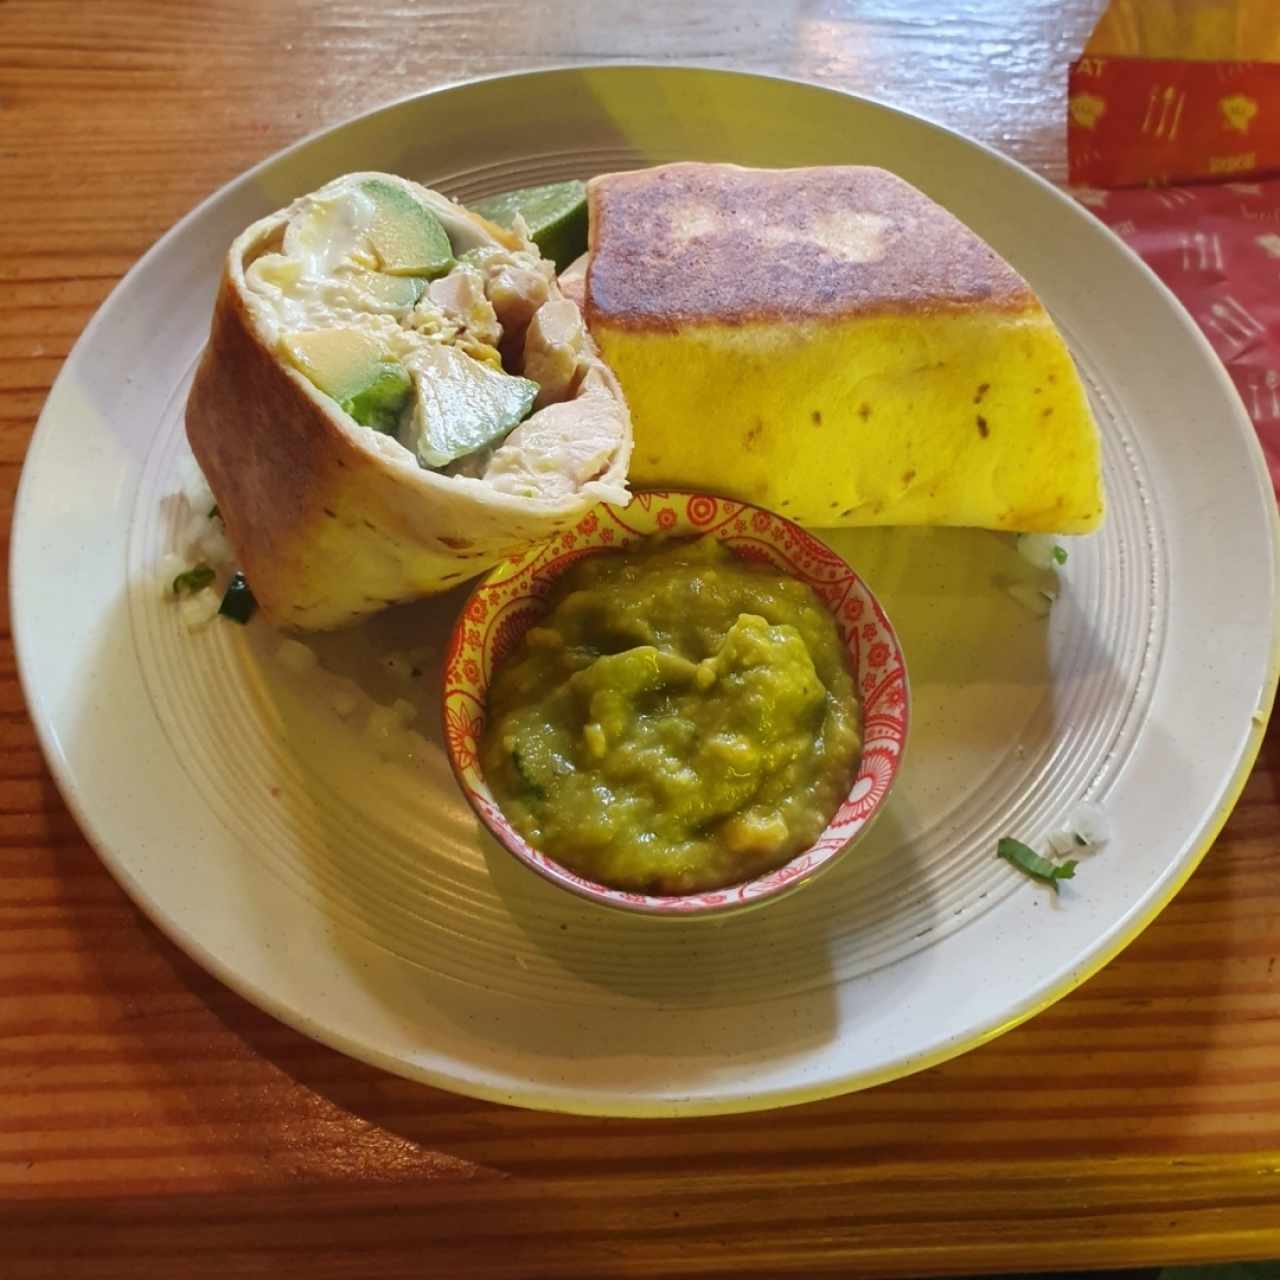 Burrito de Pollo y Aguacate // Chicken and Avocado Burrito